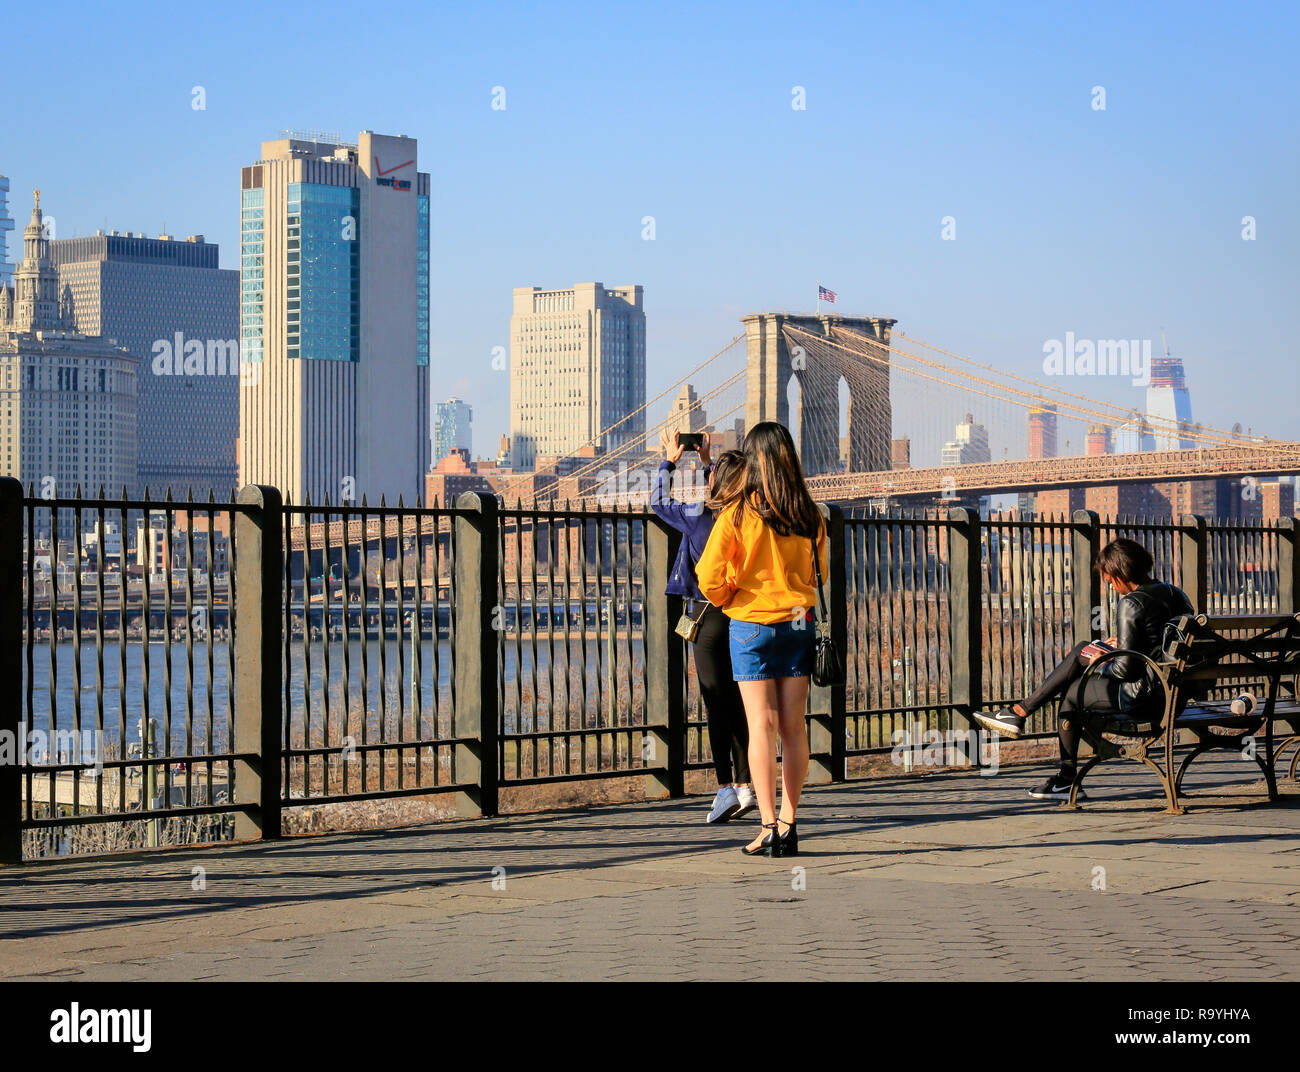 21.02.2018, New York City, New York, Vereinigte Staaten von Amerika - Menschen auf der Uferpromenade Brooklyn Heights, Blick Richtung Manhattan skylin Stock Photo